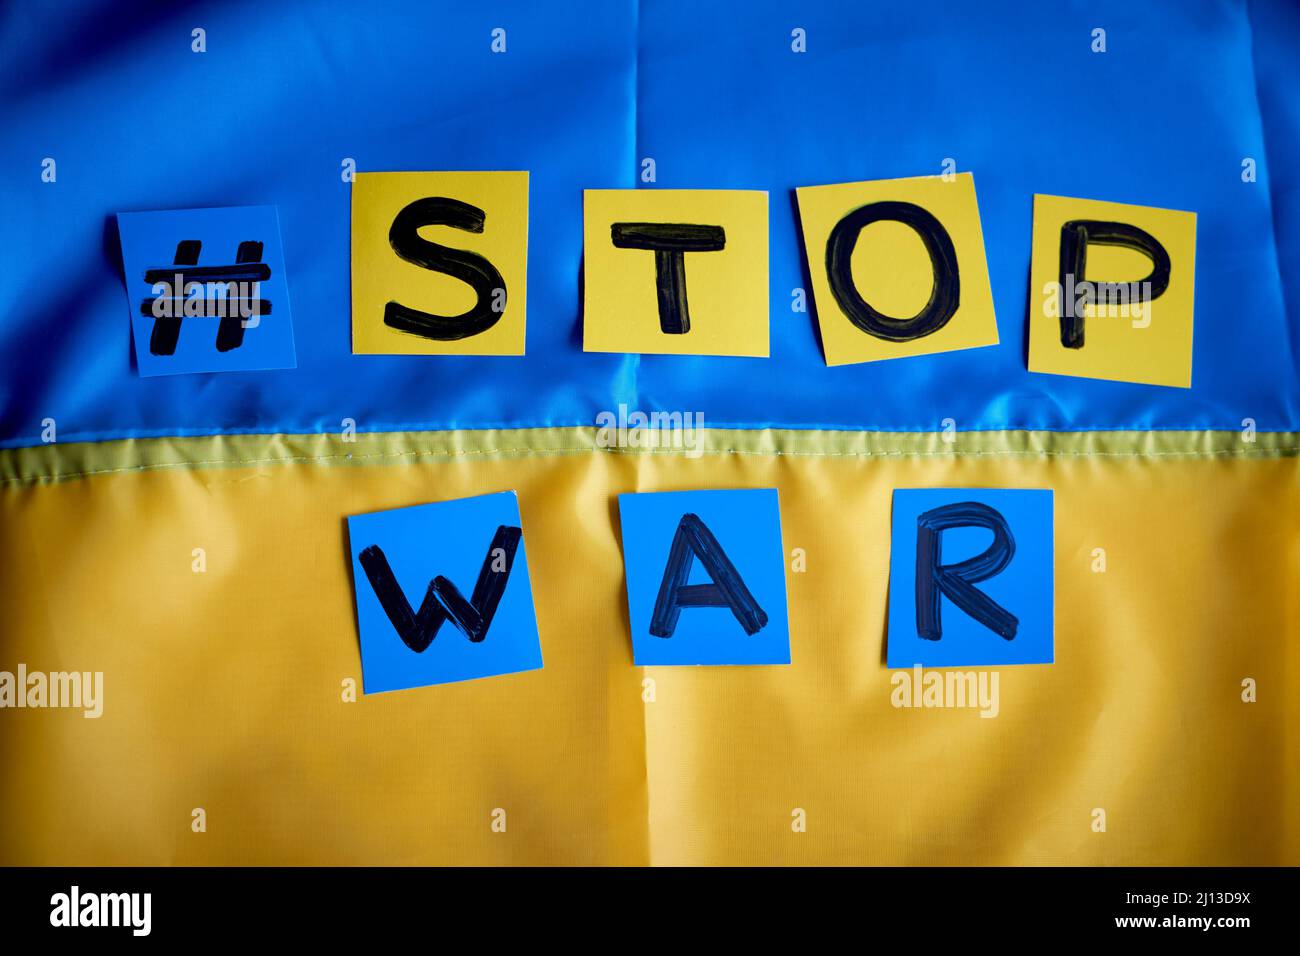 Stare con l'ucraina immagini e fotografie stock ad alta risoluzione - Alamy